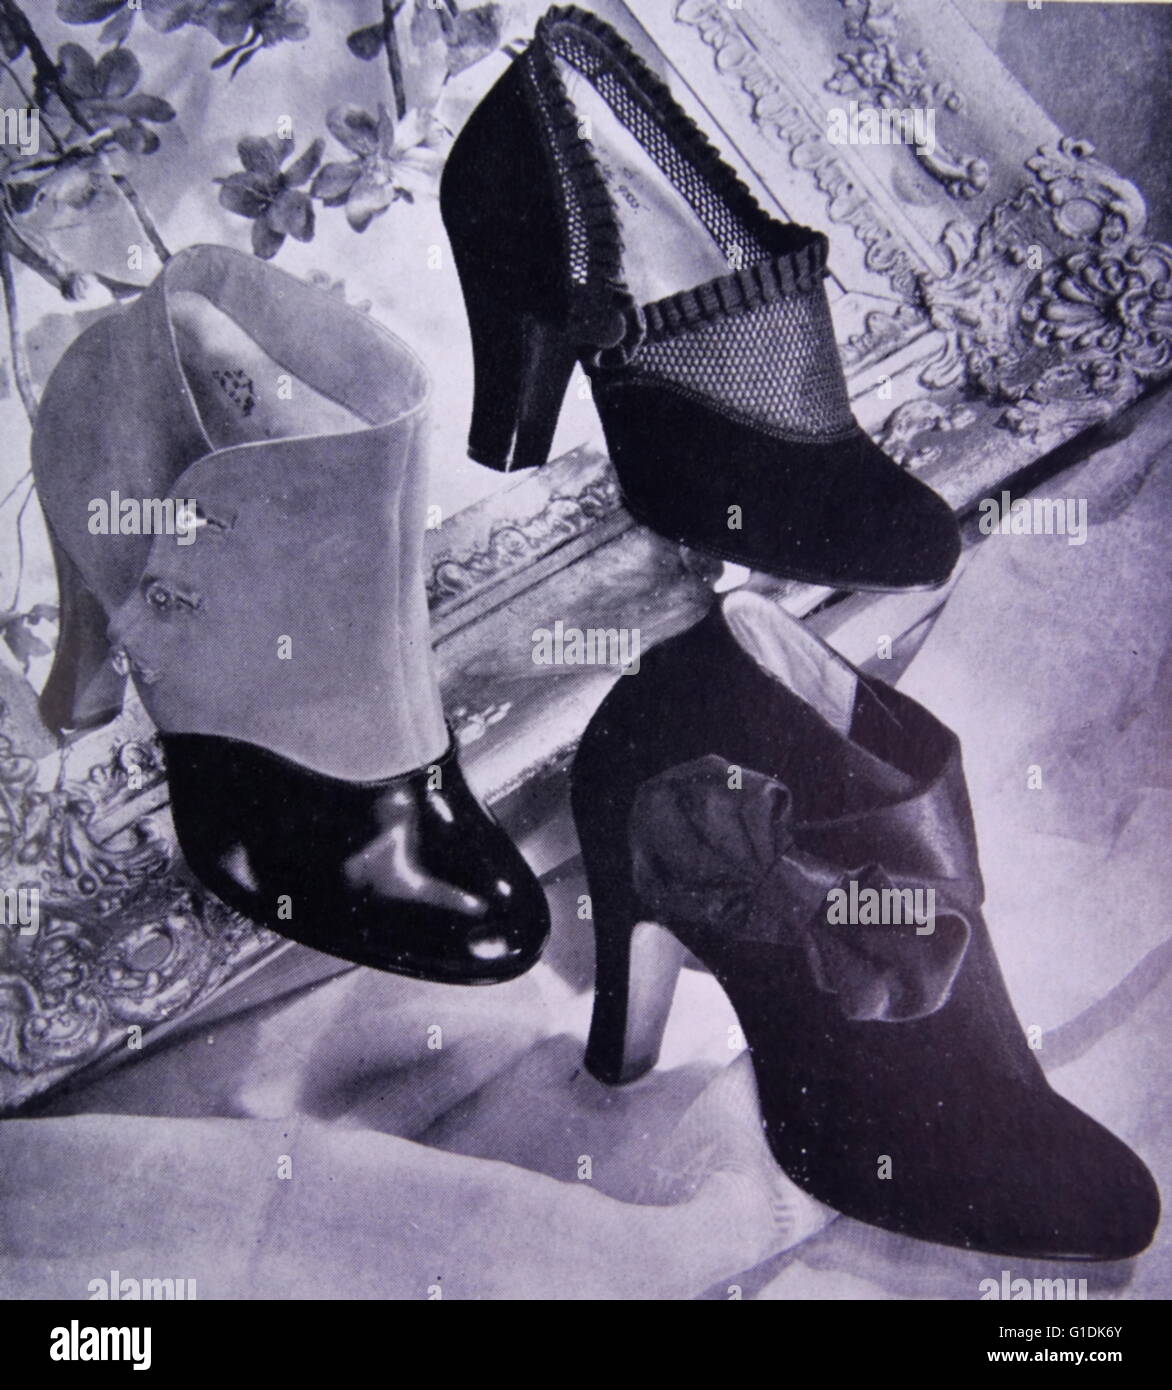 Anuncio de nuevos zapatos elegantes por Rayne, un fabricante británico por high-end de alta costura y zapatos. Fundada en 1899 como un costumier teatral, se diversificaron en de moda en